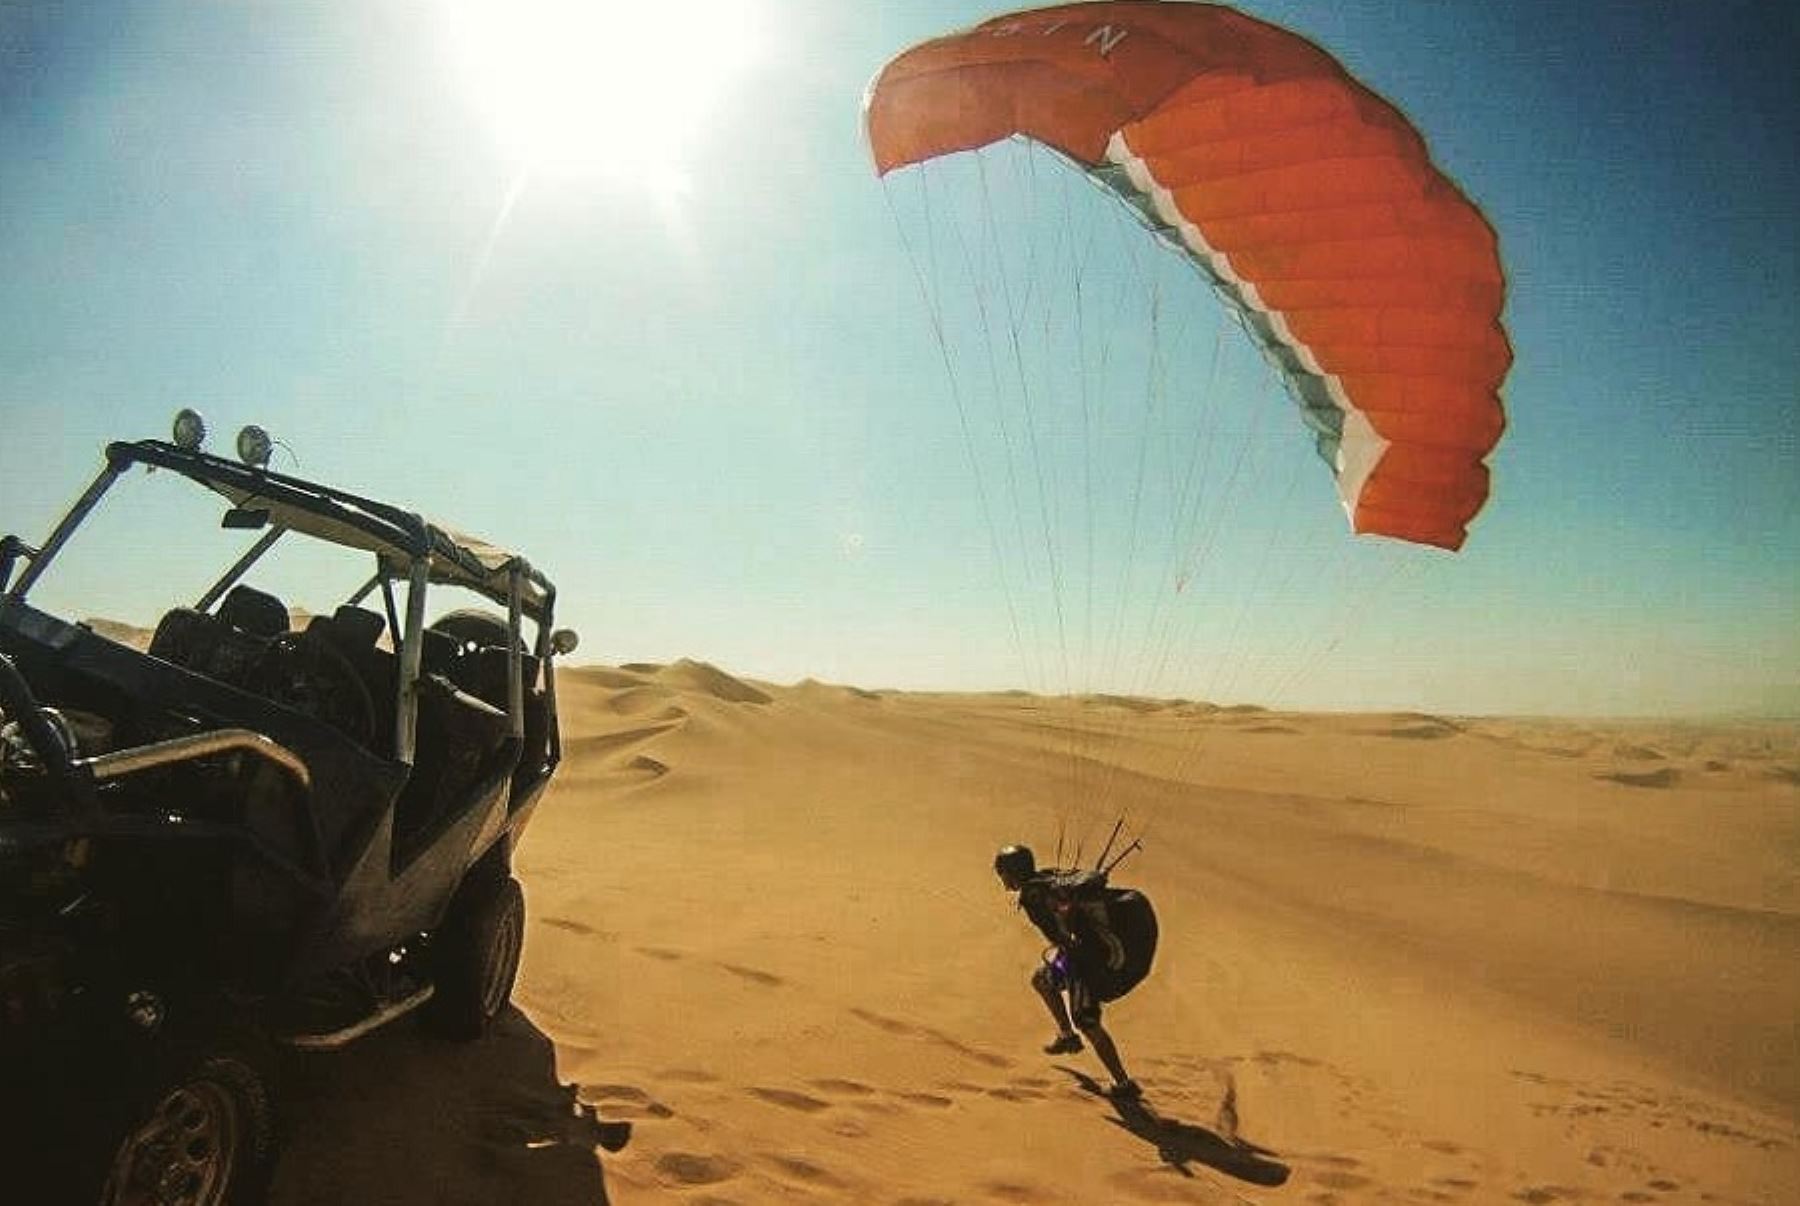 El desierto de Ica es considerado uno de los más bellos del mundo y ofrece condiciones ideales para la práctica de deportes de aventura como el parapente, gracias a sus extensas y ondulantes dunas